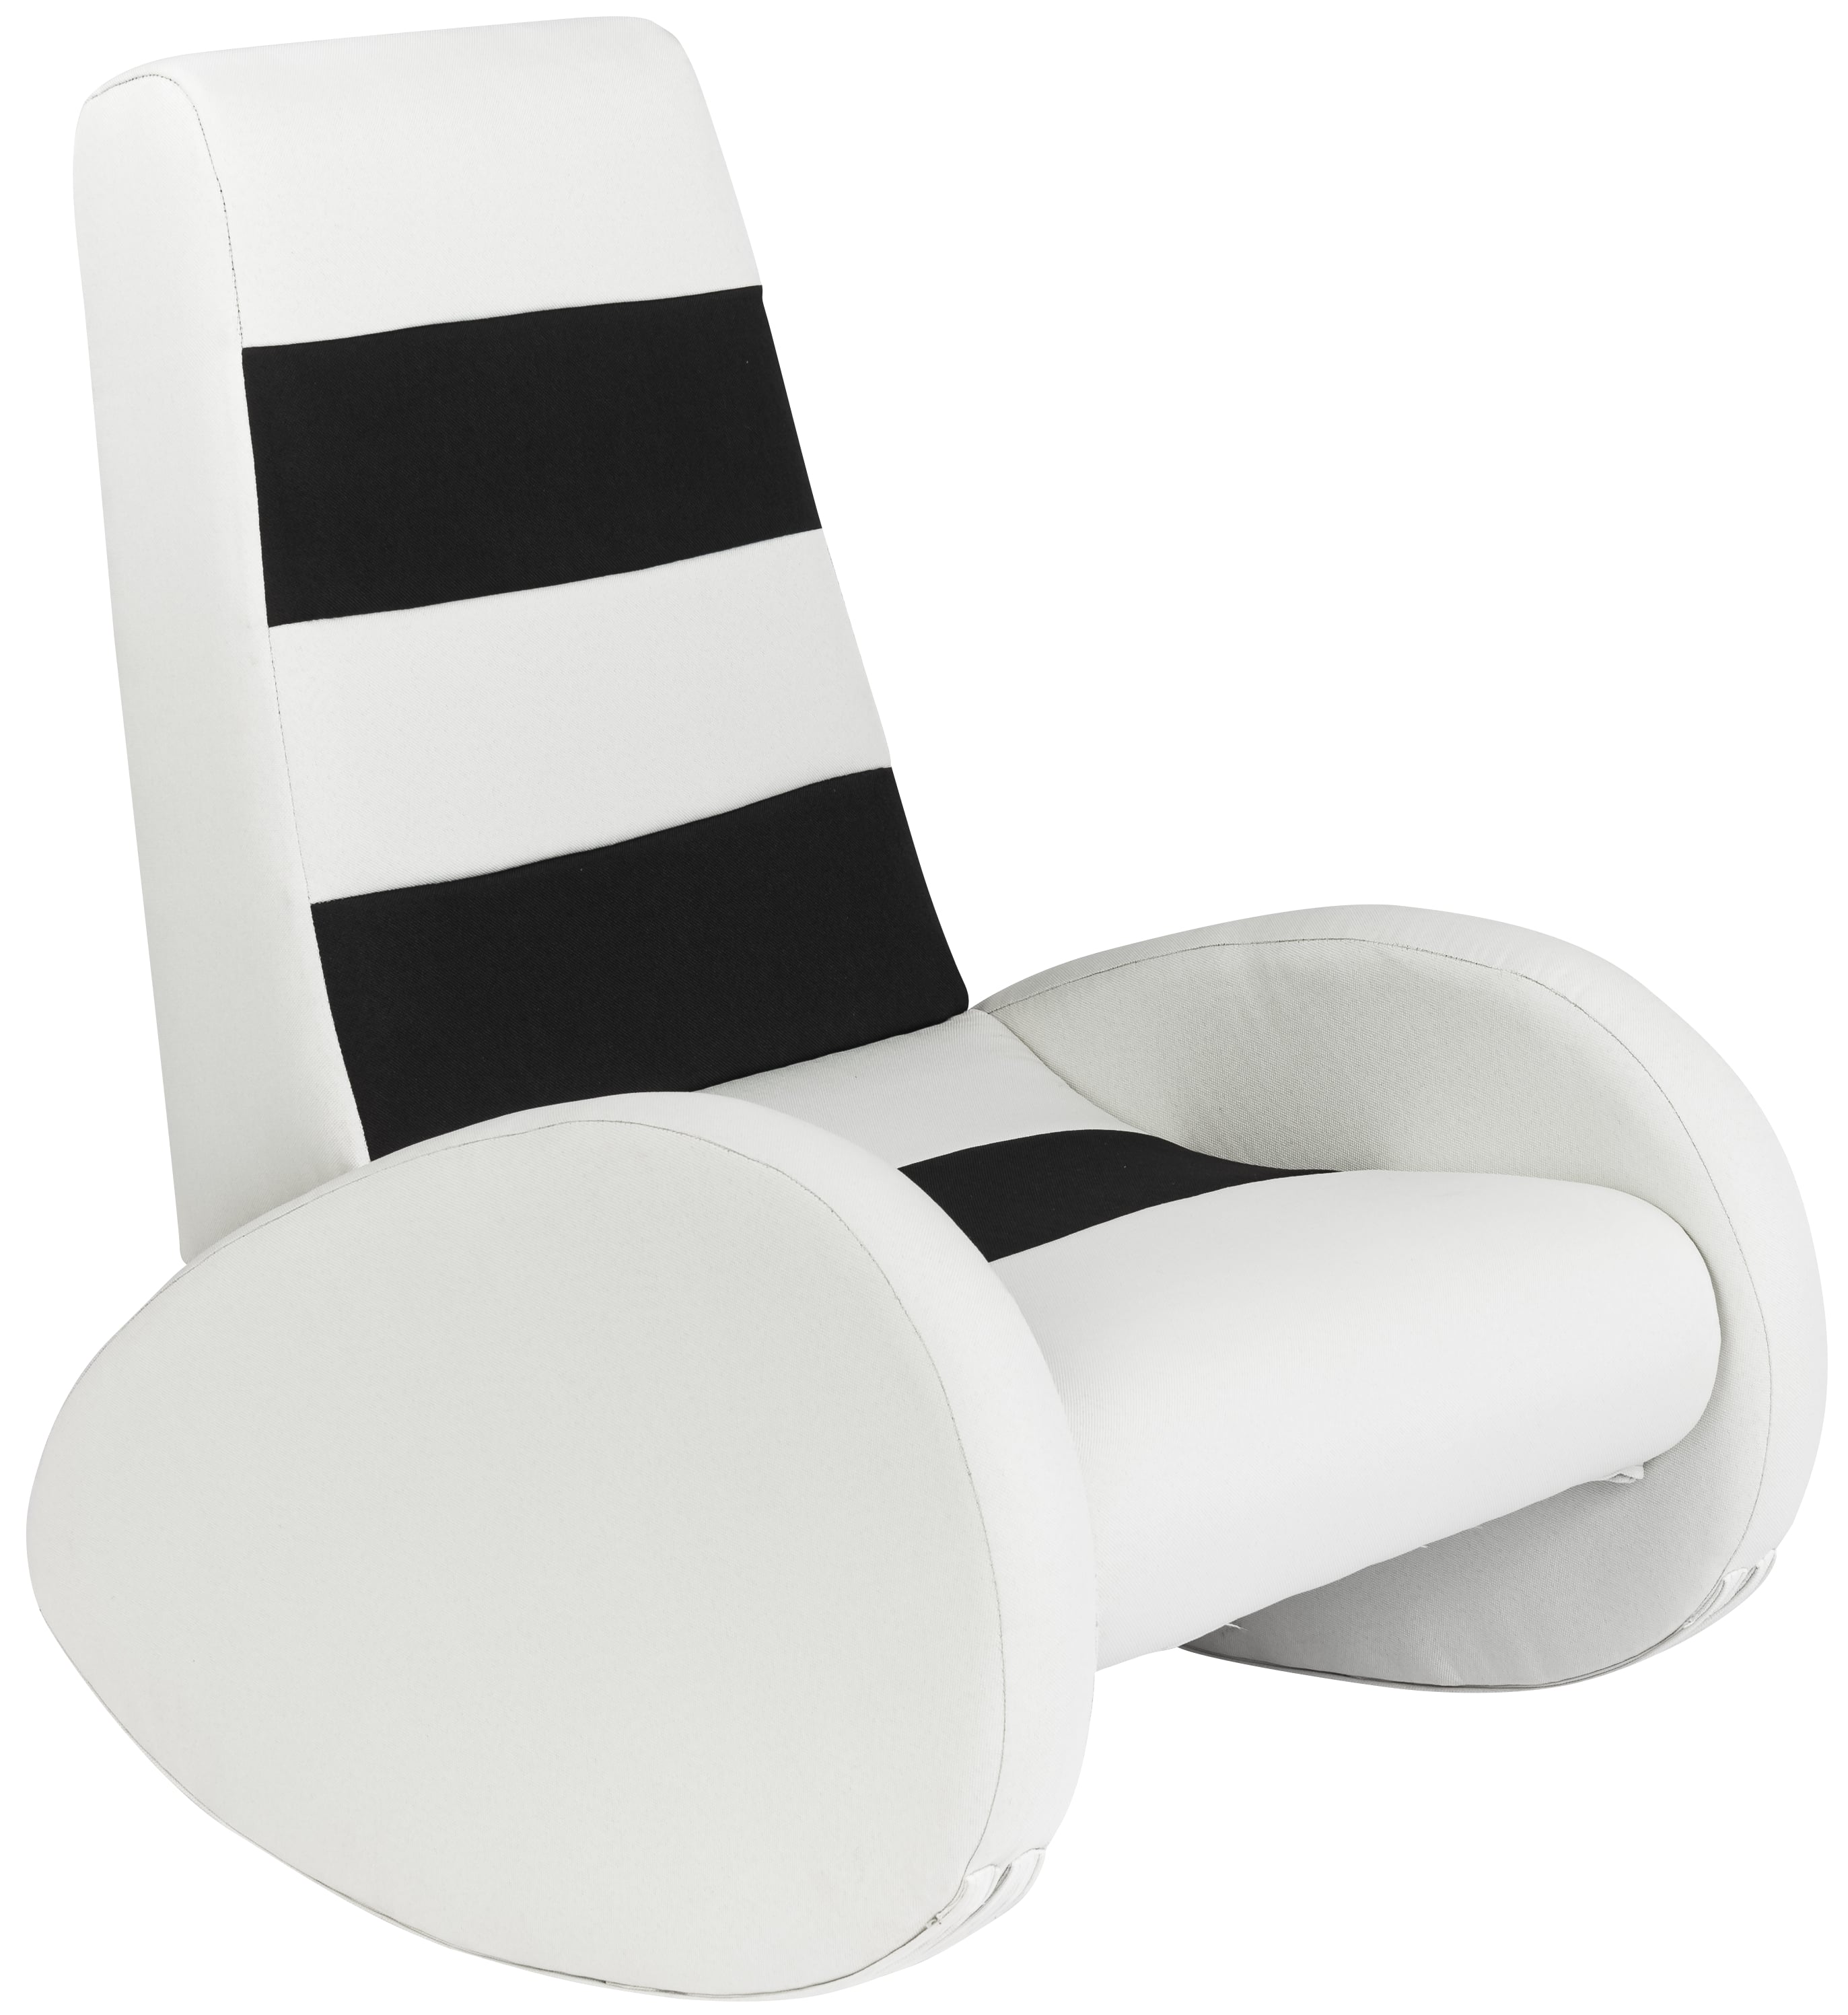 כורסא לילדים מתאימה למשחק פלייסטיישן, בצבע שחור ולבן